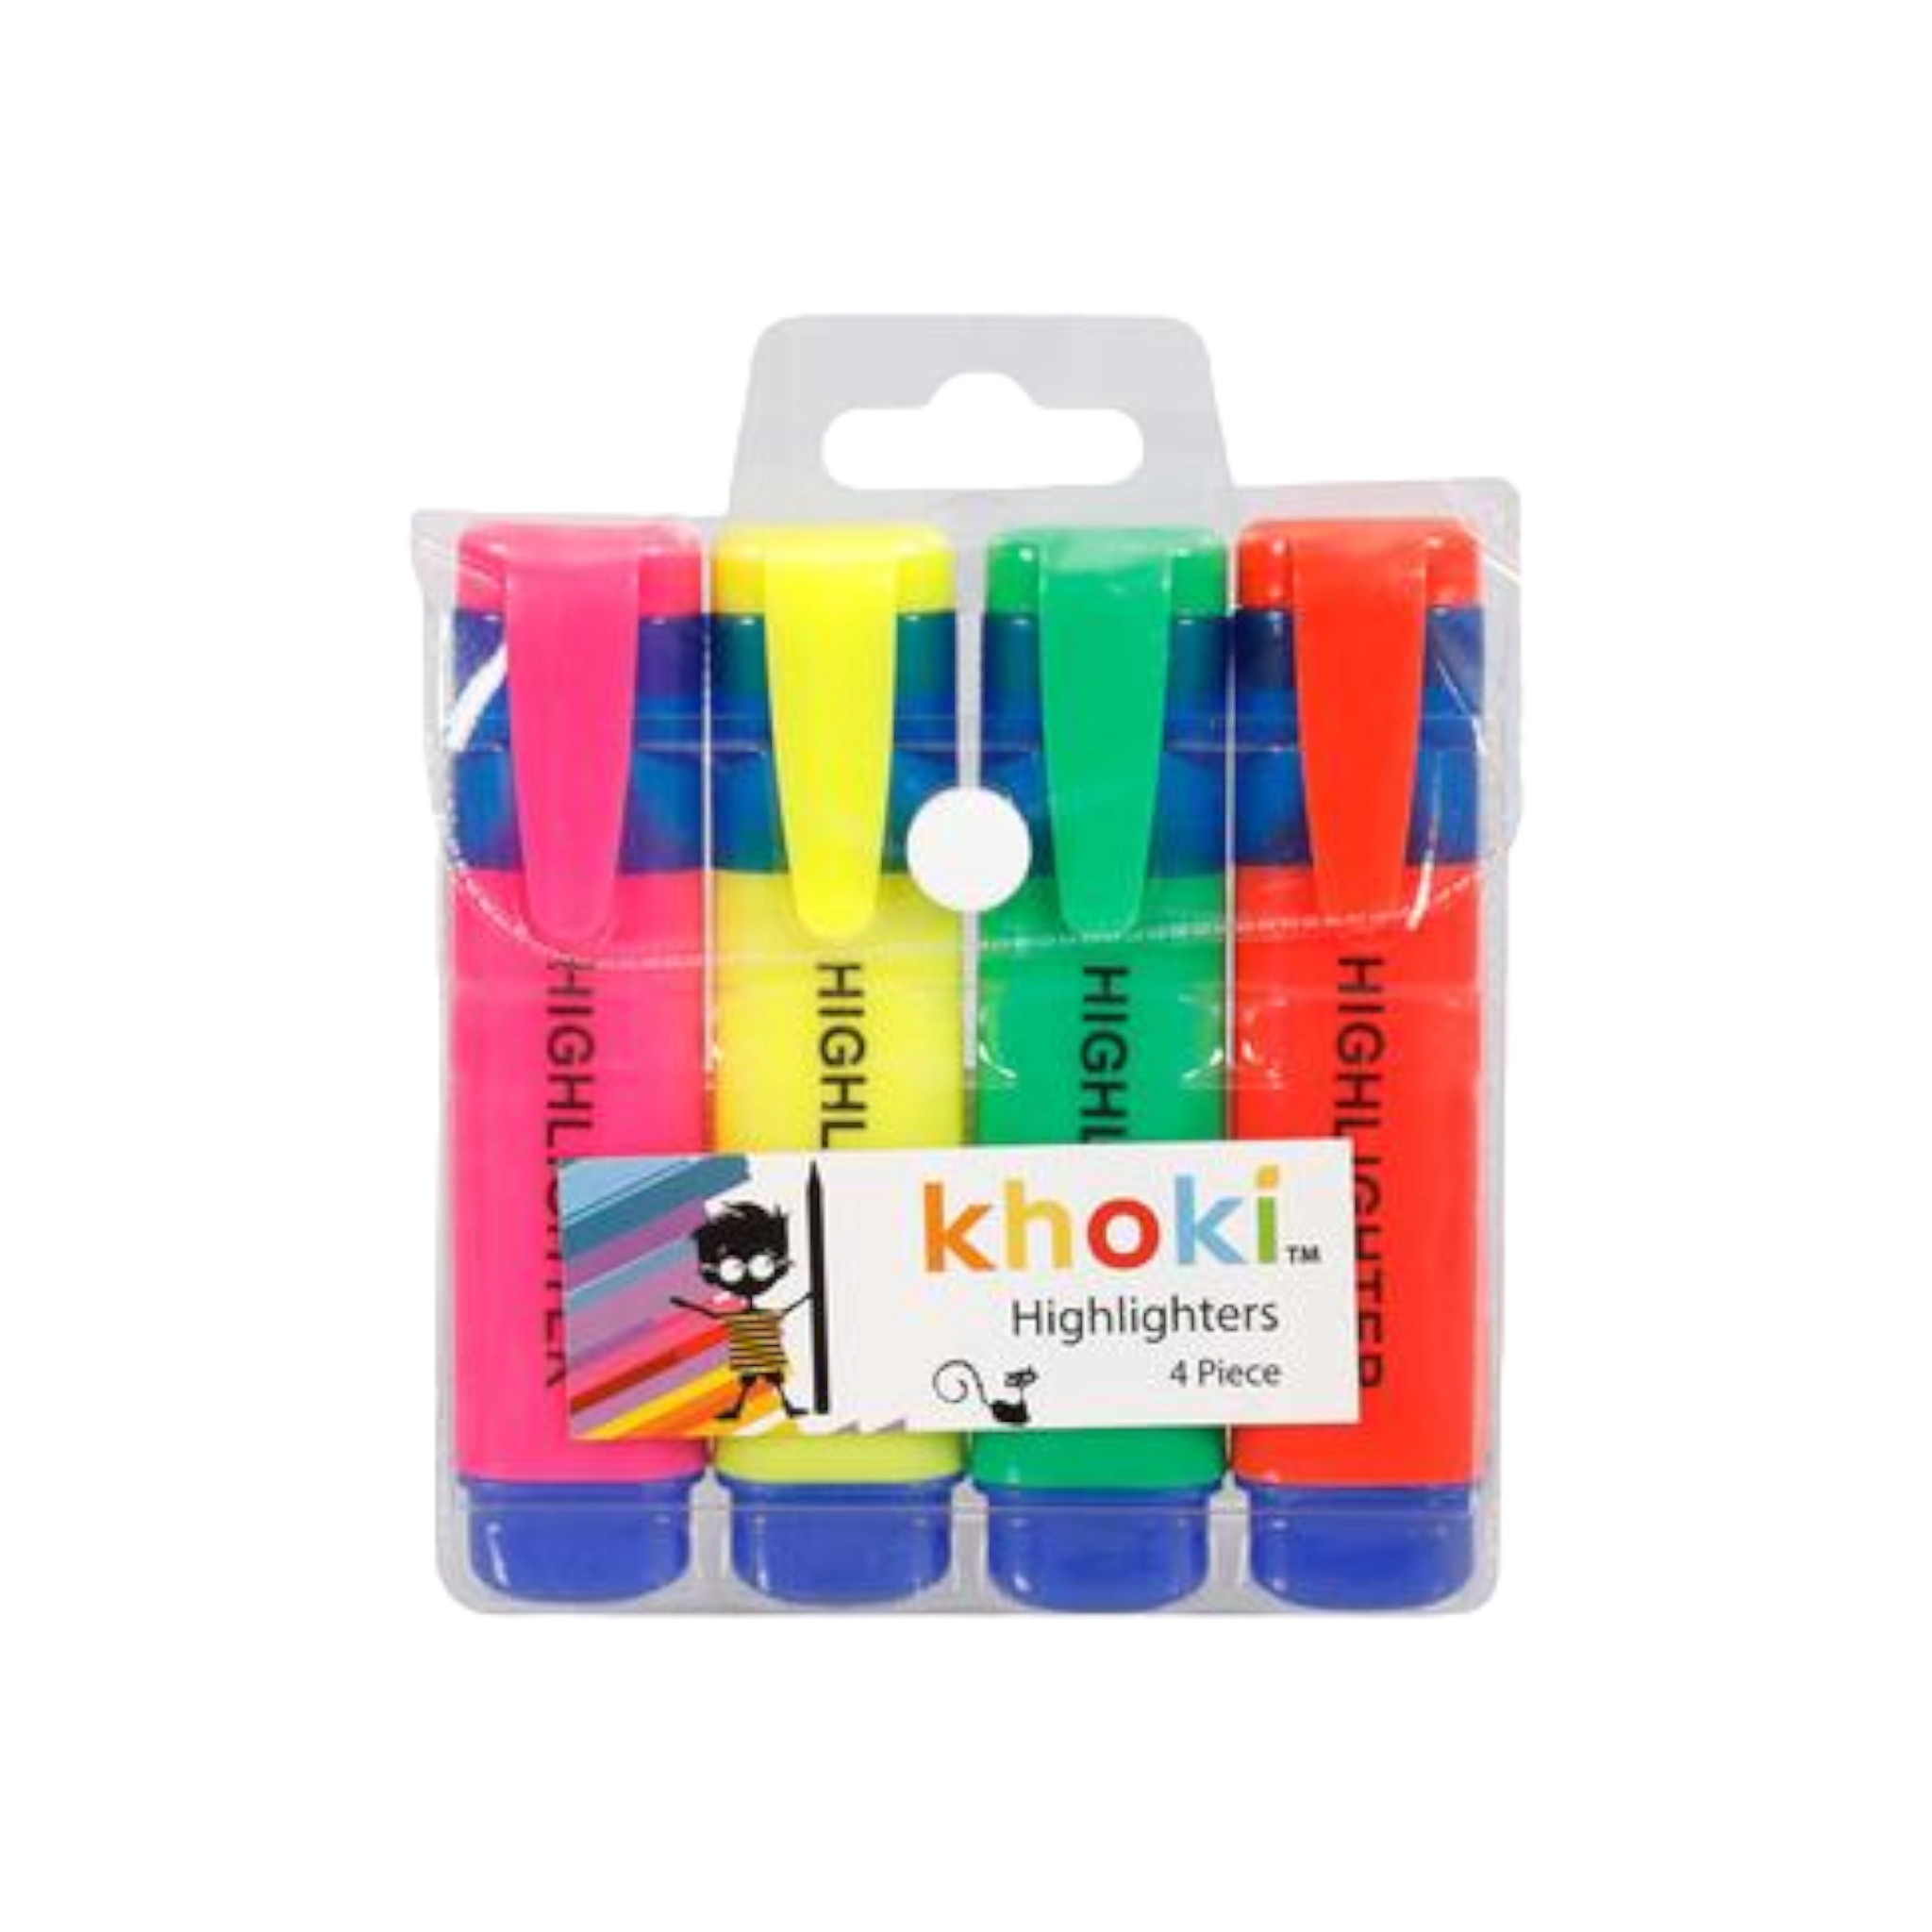 Khoki Highlighter 4pack